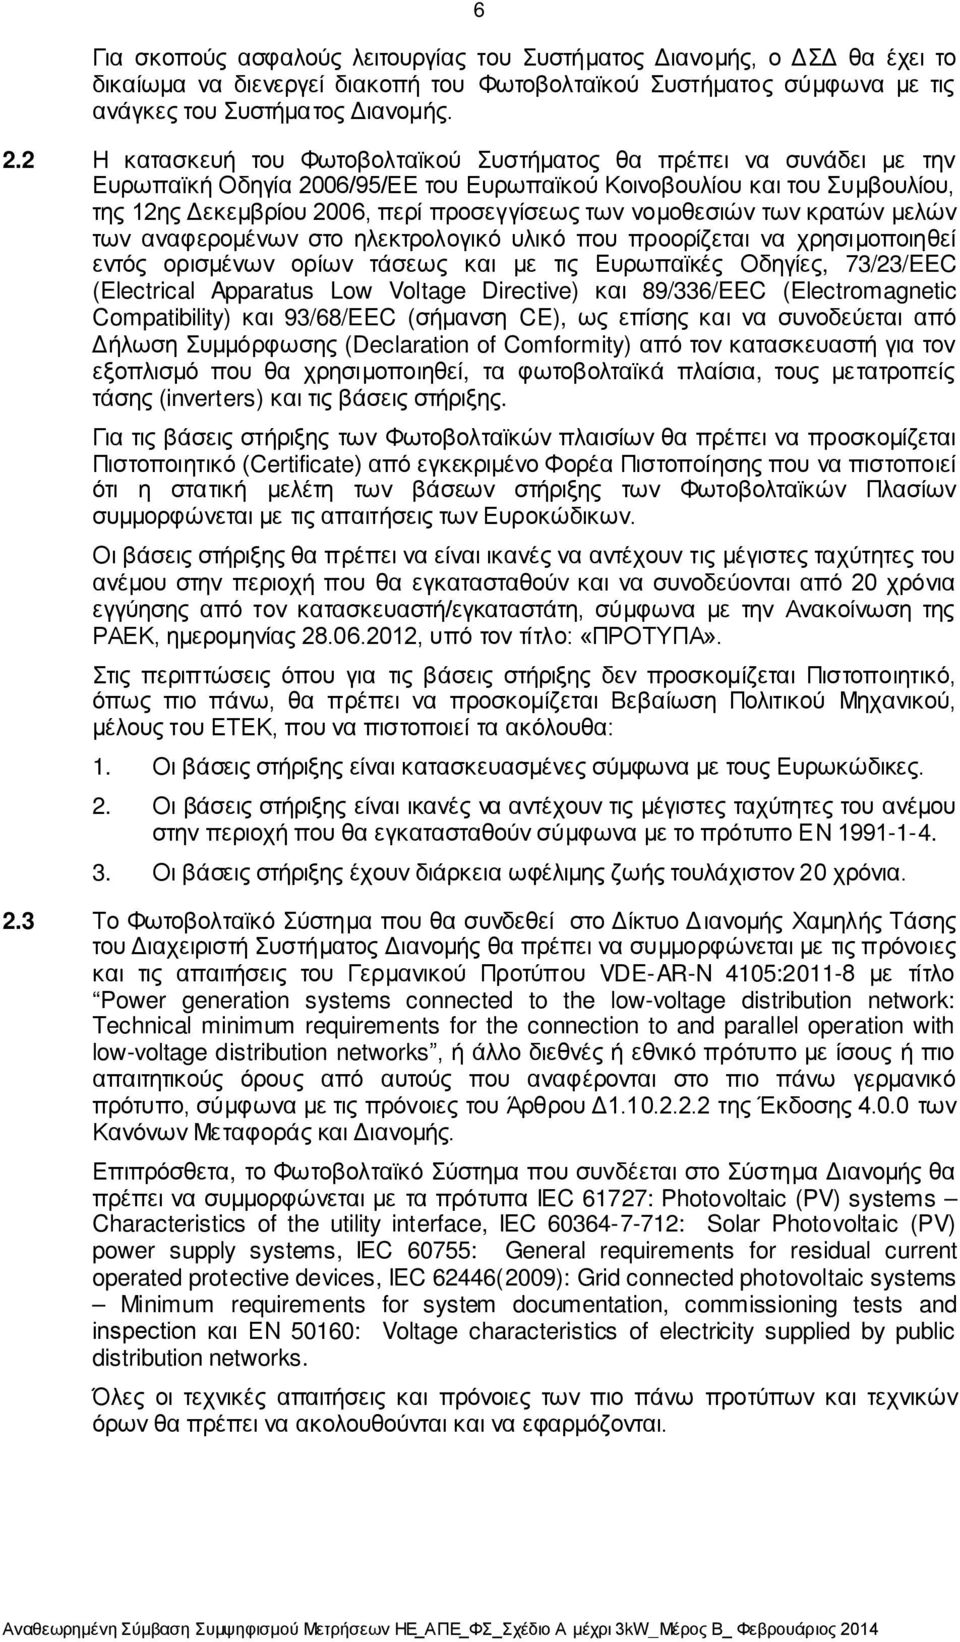 νομοθεσιών των κρατών μελών των αναφερομένων στο ηλεκτρολογικό υλικό που προορίζεται να χρησιμοποιηθεί εντός ορισμένων ορίων τάσεως και με τις Ευρωπαϊκές Οδηγίες, 73/23/EEC (Electrical Apparatus Low